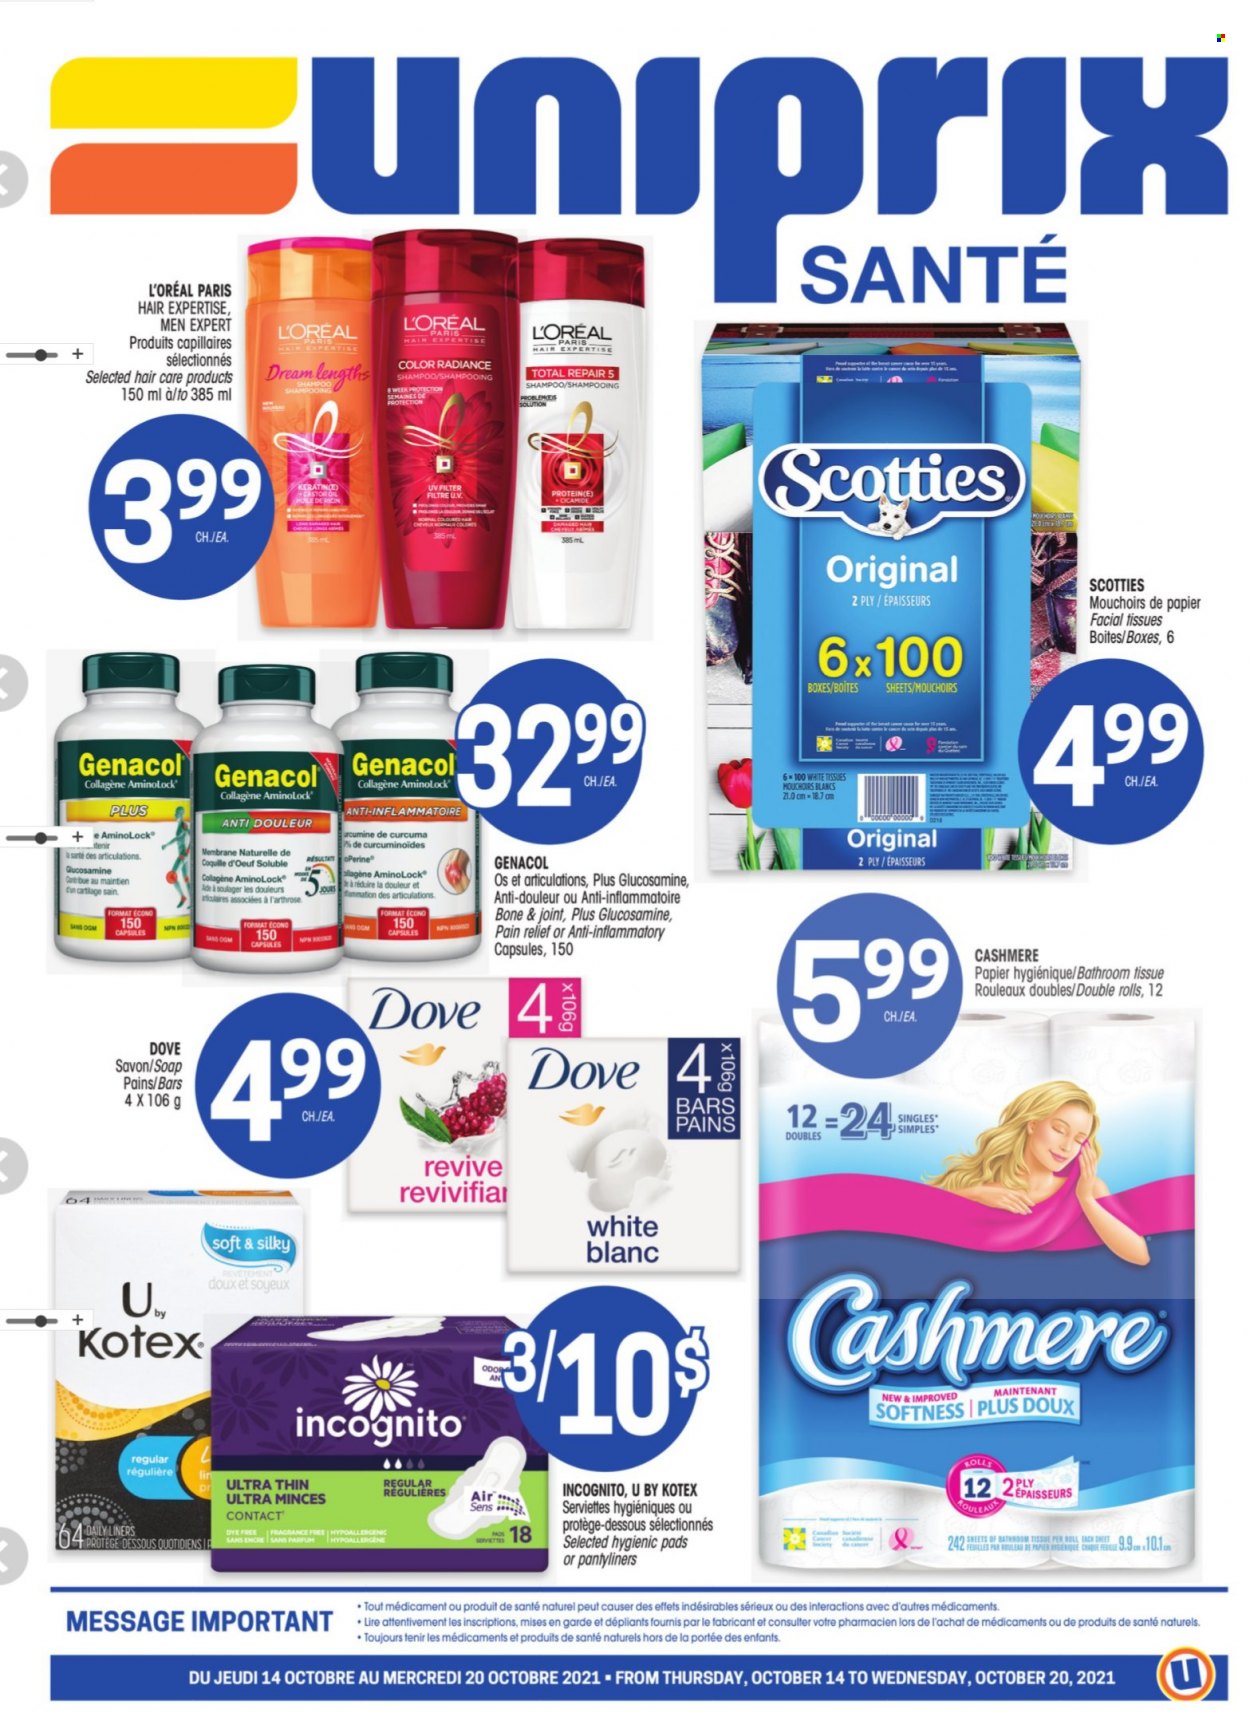 thumbnail - Uniprix Santé Flyer - October 14, 2021 - October 20, 2021 - Sales products - bath tissue, soap, Kotex, pantyliners, facial tissues, L’Oréal, pain relief, Dove, shampoo. Page 1.